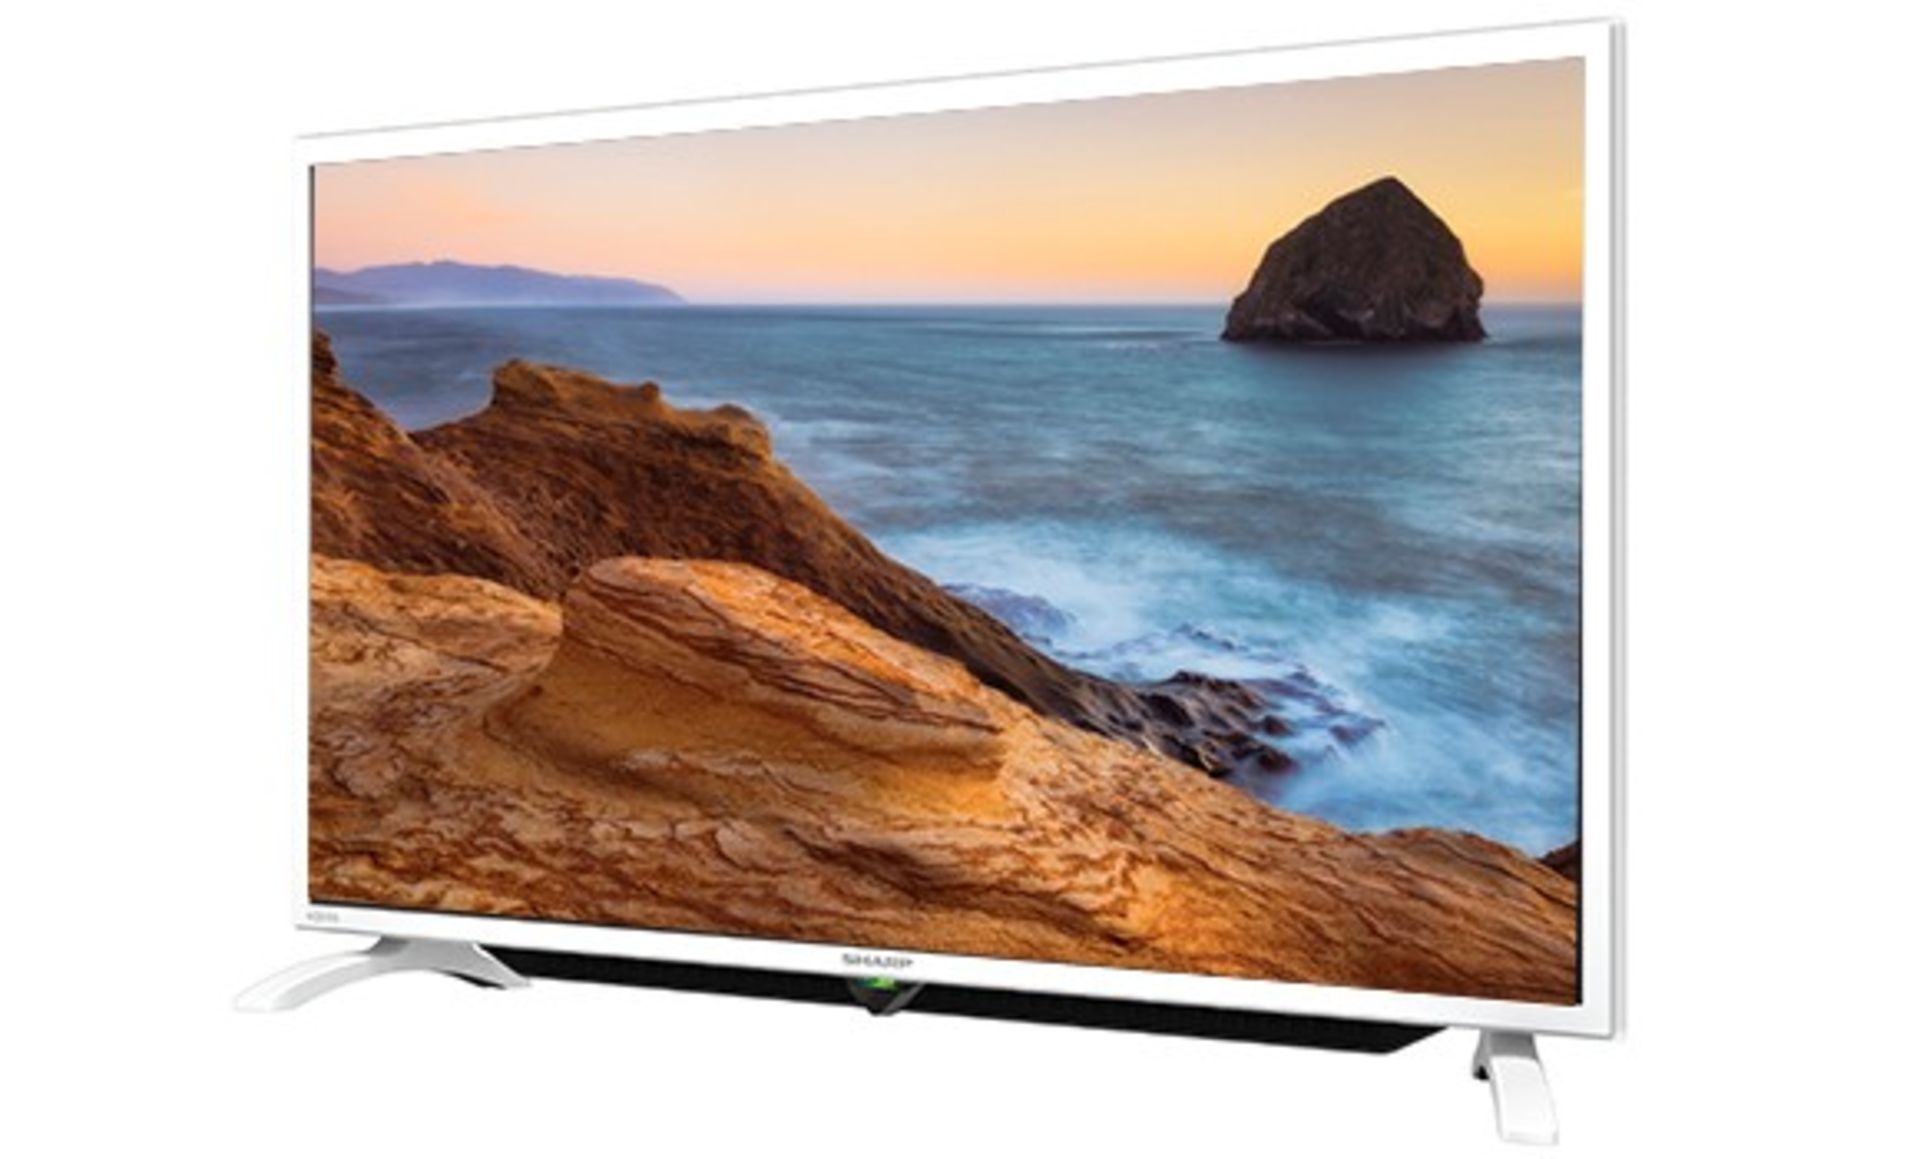 V Grade A 32" Sharp Smart LED Full HD TV - White - Freeview Play - Built In WiFi - Harman Kardon